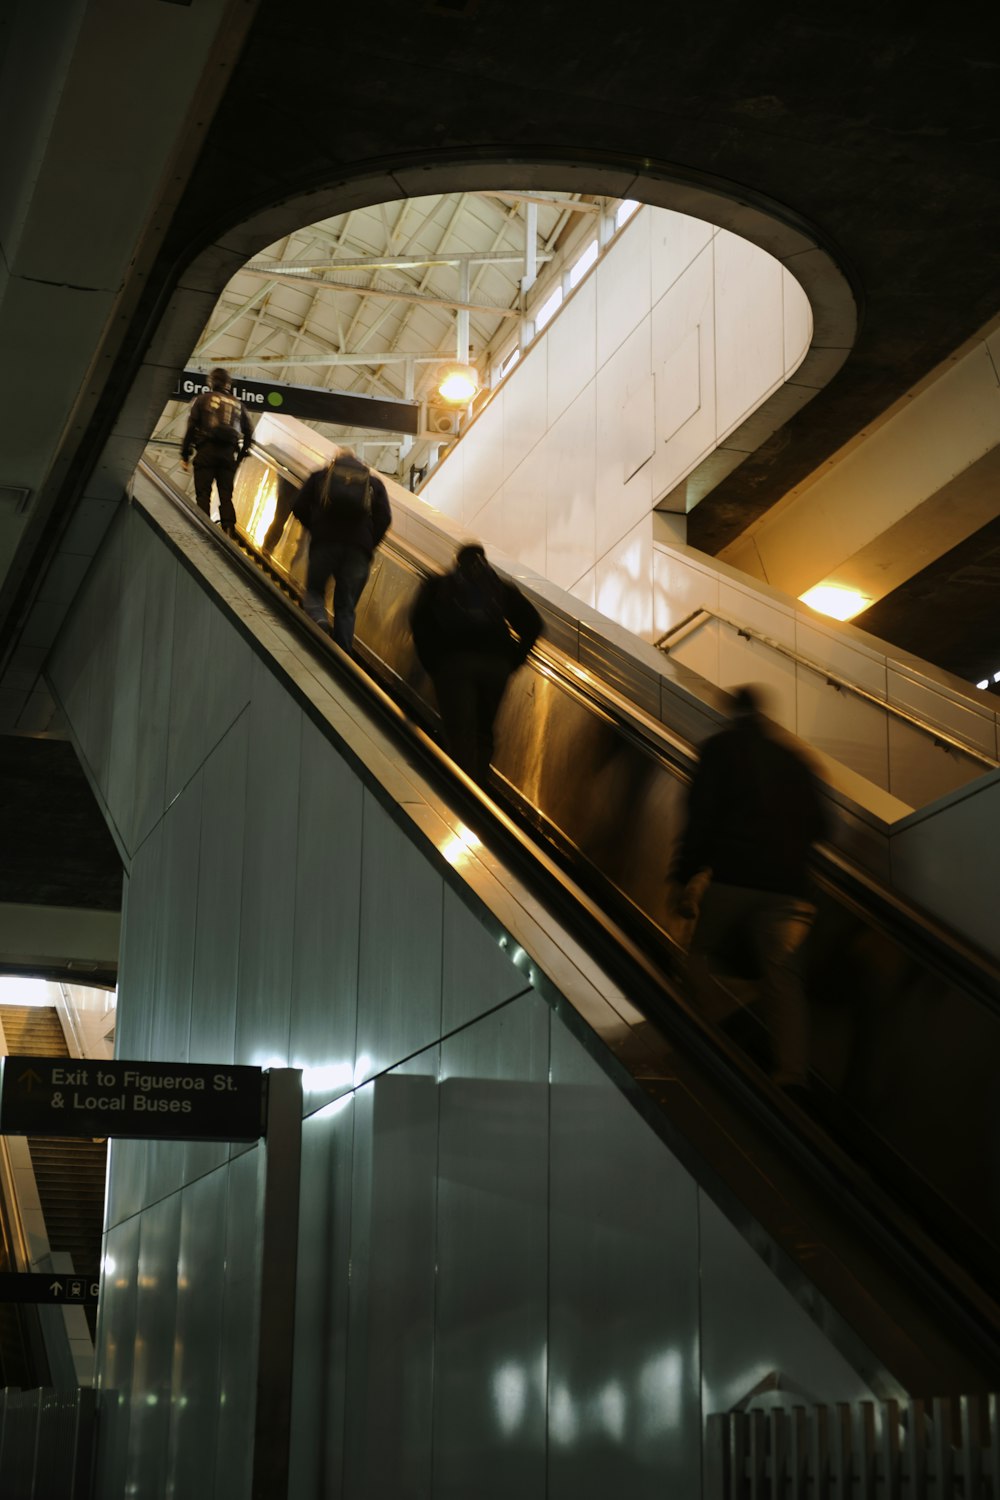 four people on escalator inside building